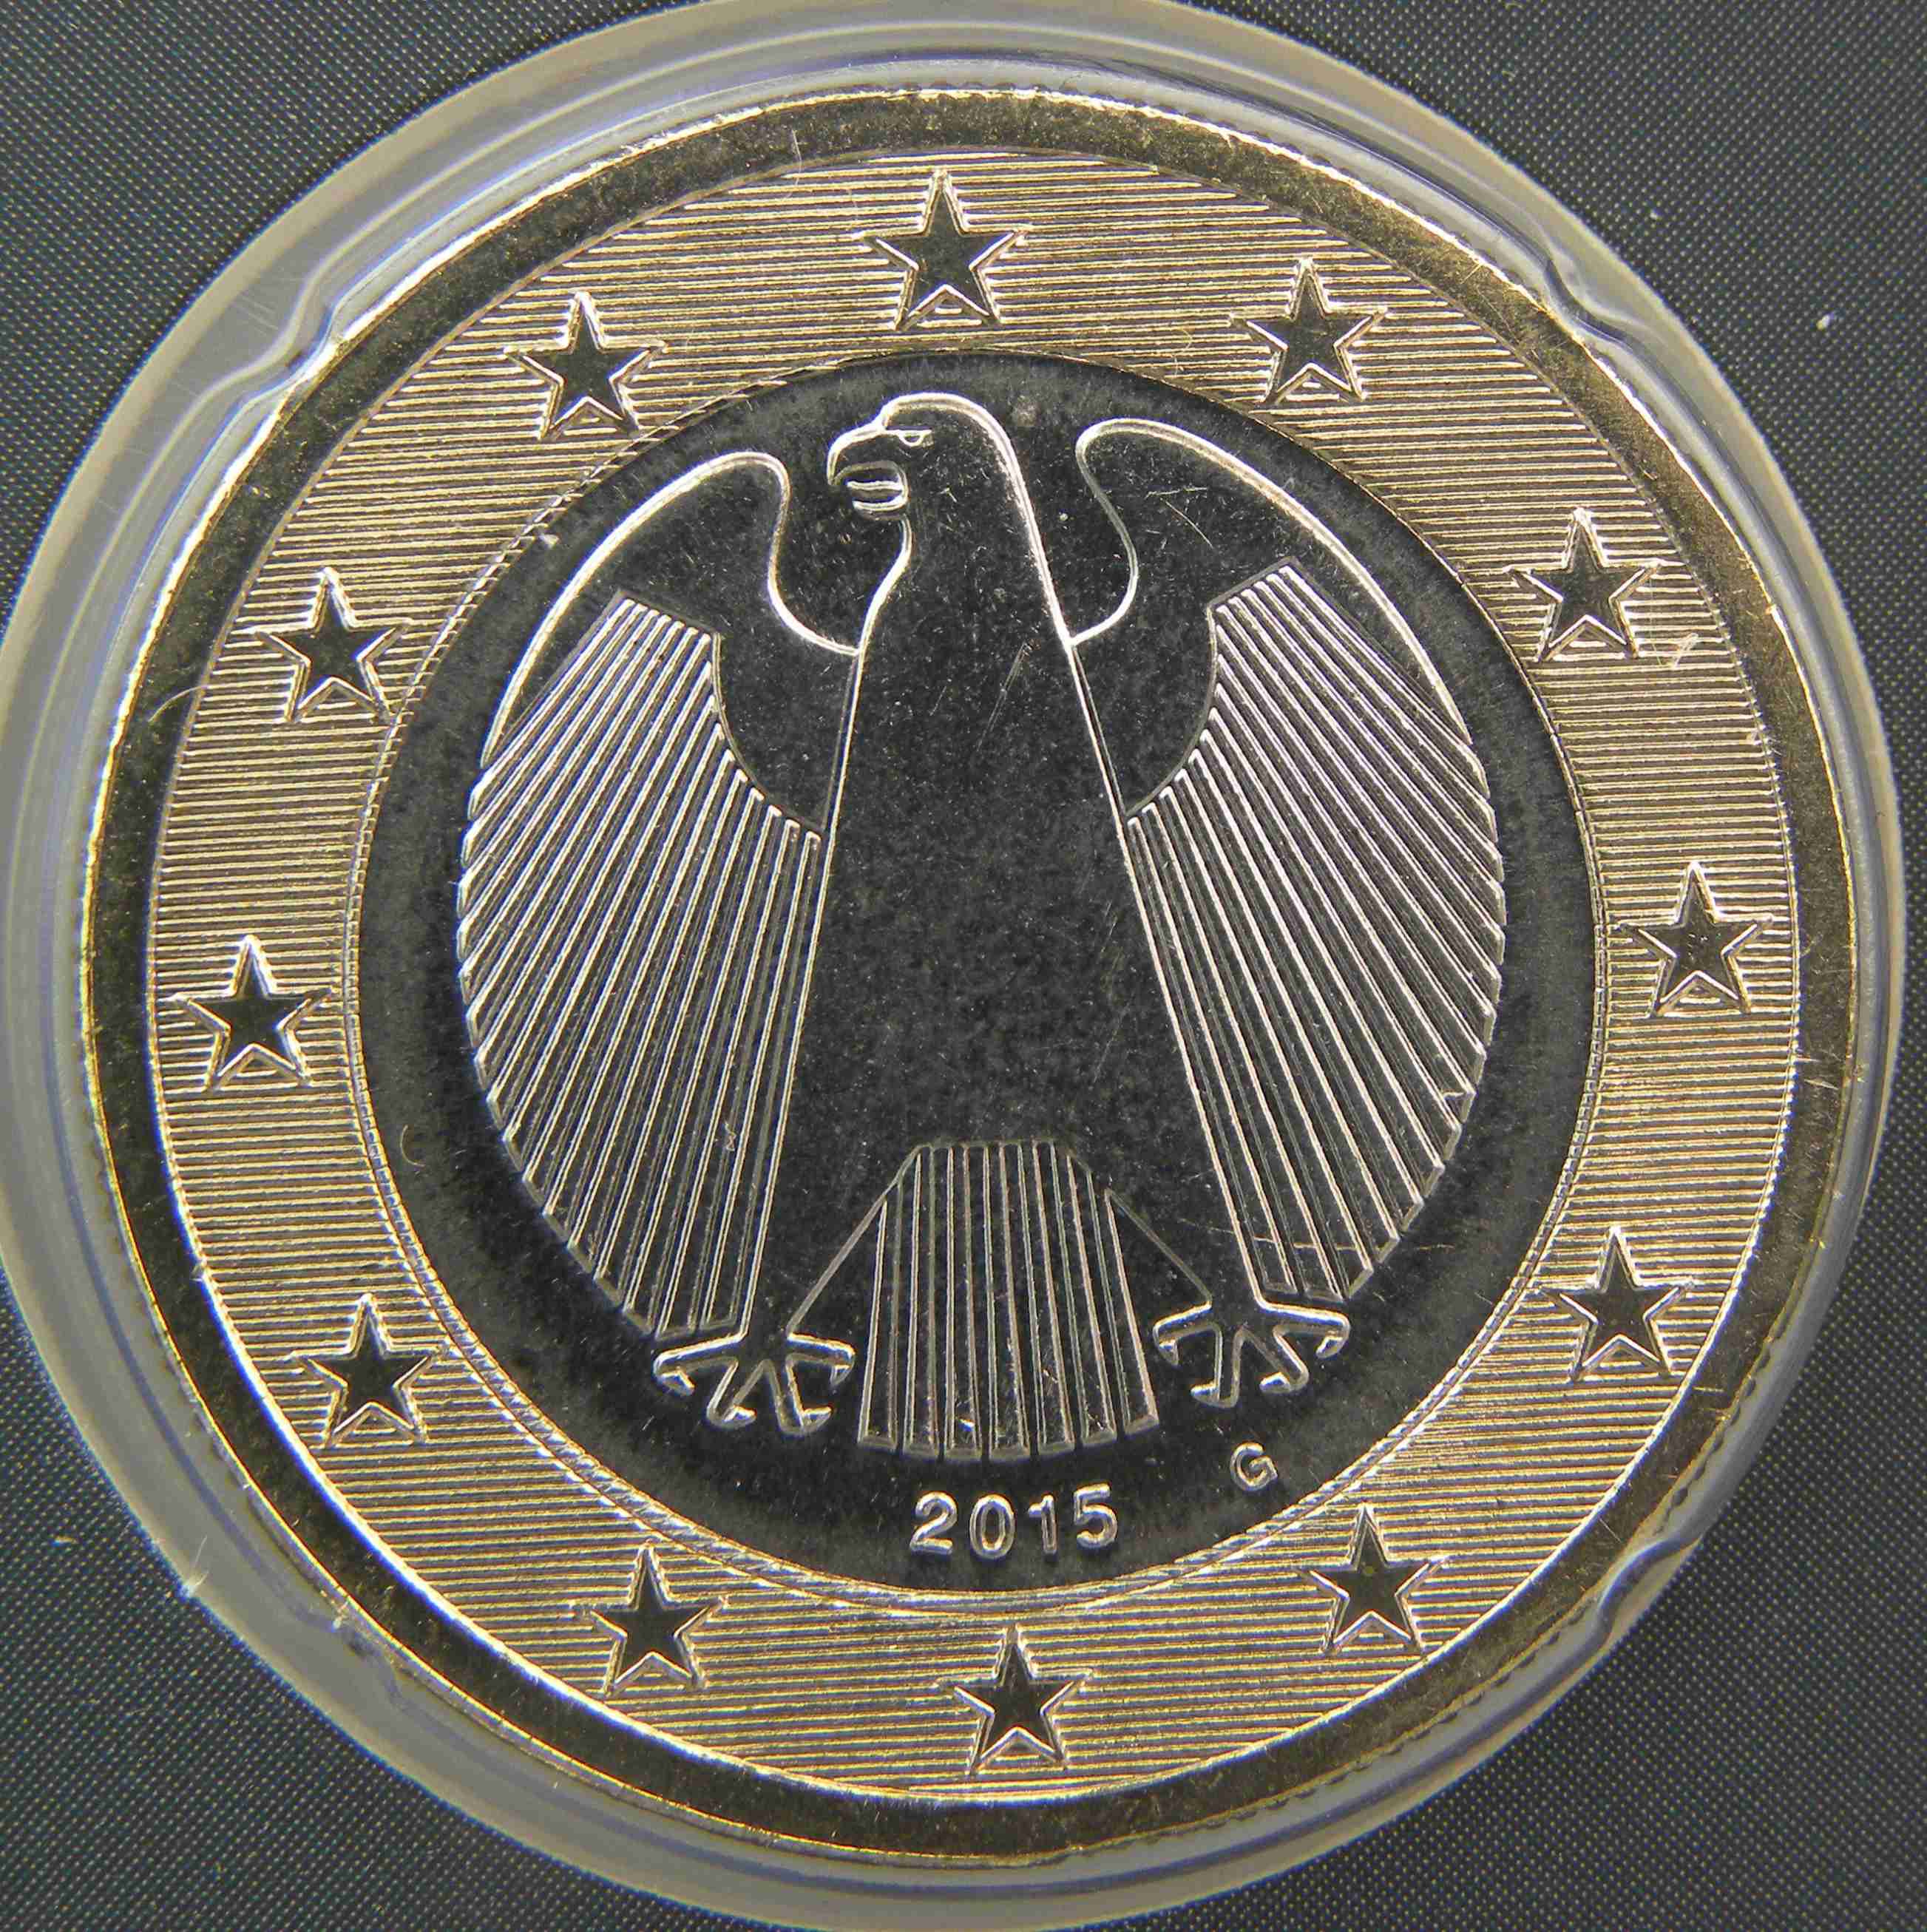 Deutschland 1 Euro Münze 2015 G - euro-muenzen.tv - Der Online